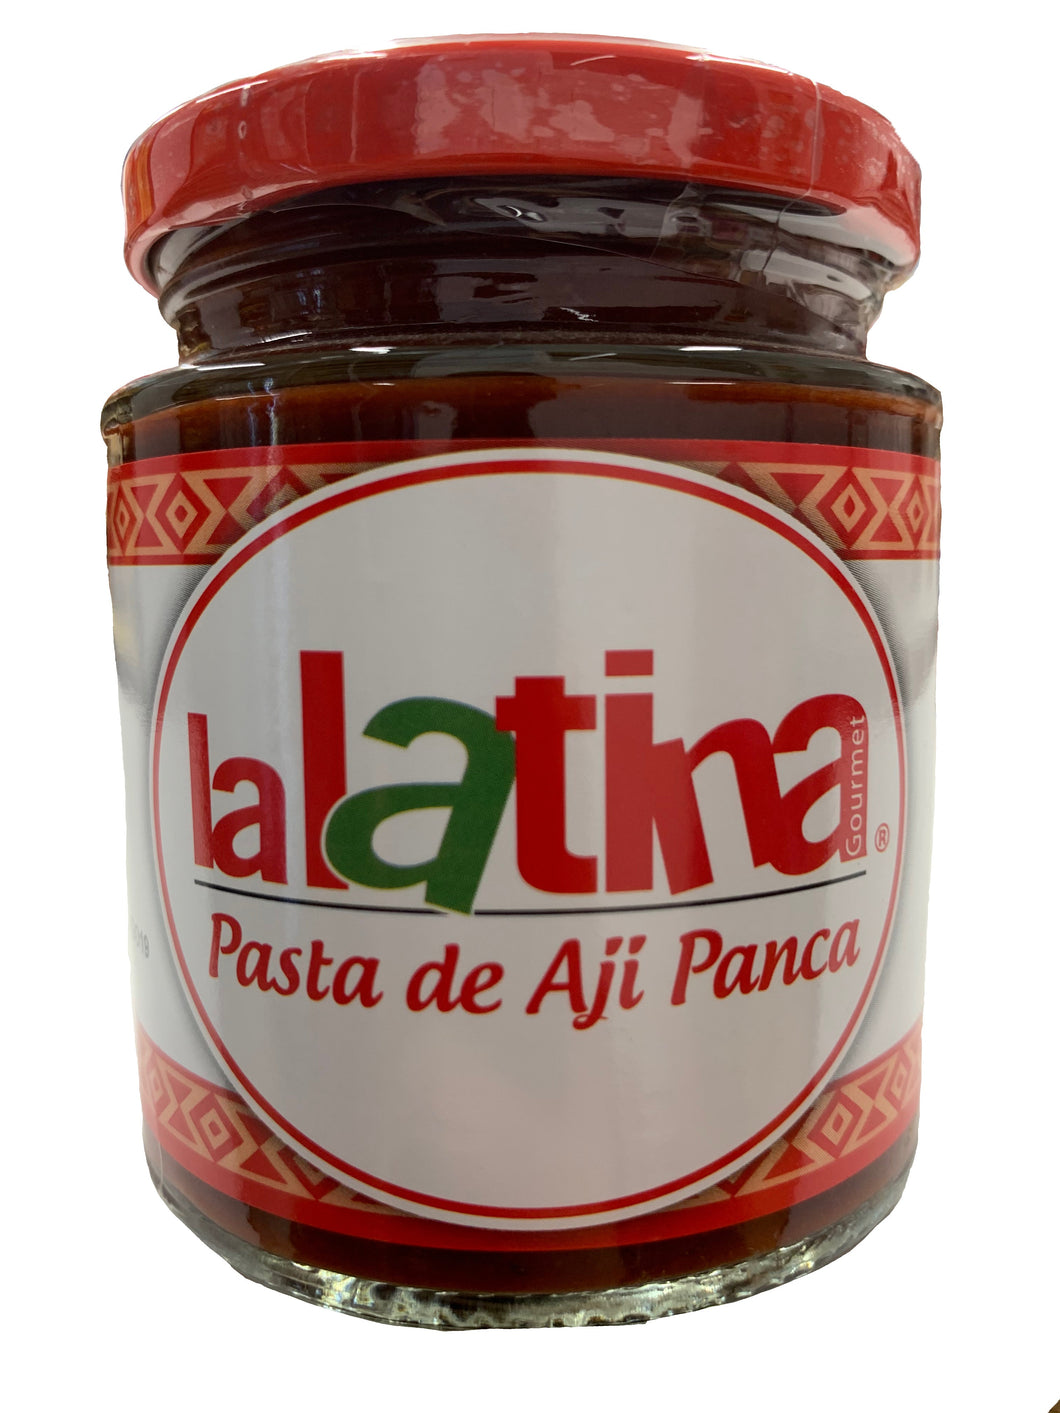 La Latina Aji Panca (Spicy) Chilli Paste - Pasta de Aji Panca (Picante) 24x225g